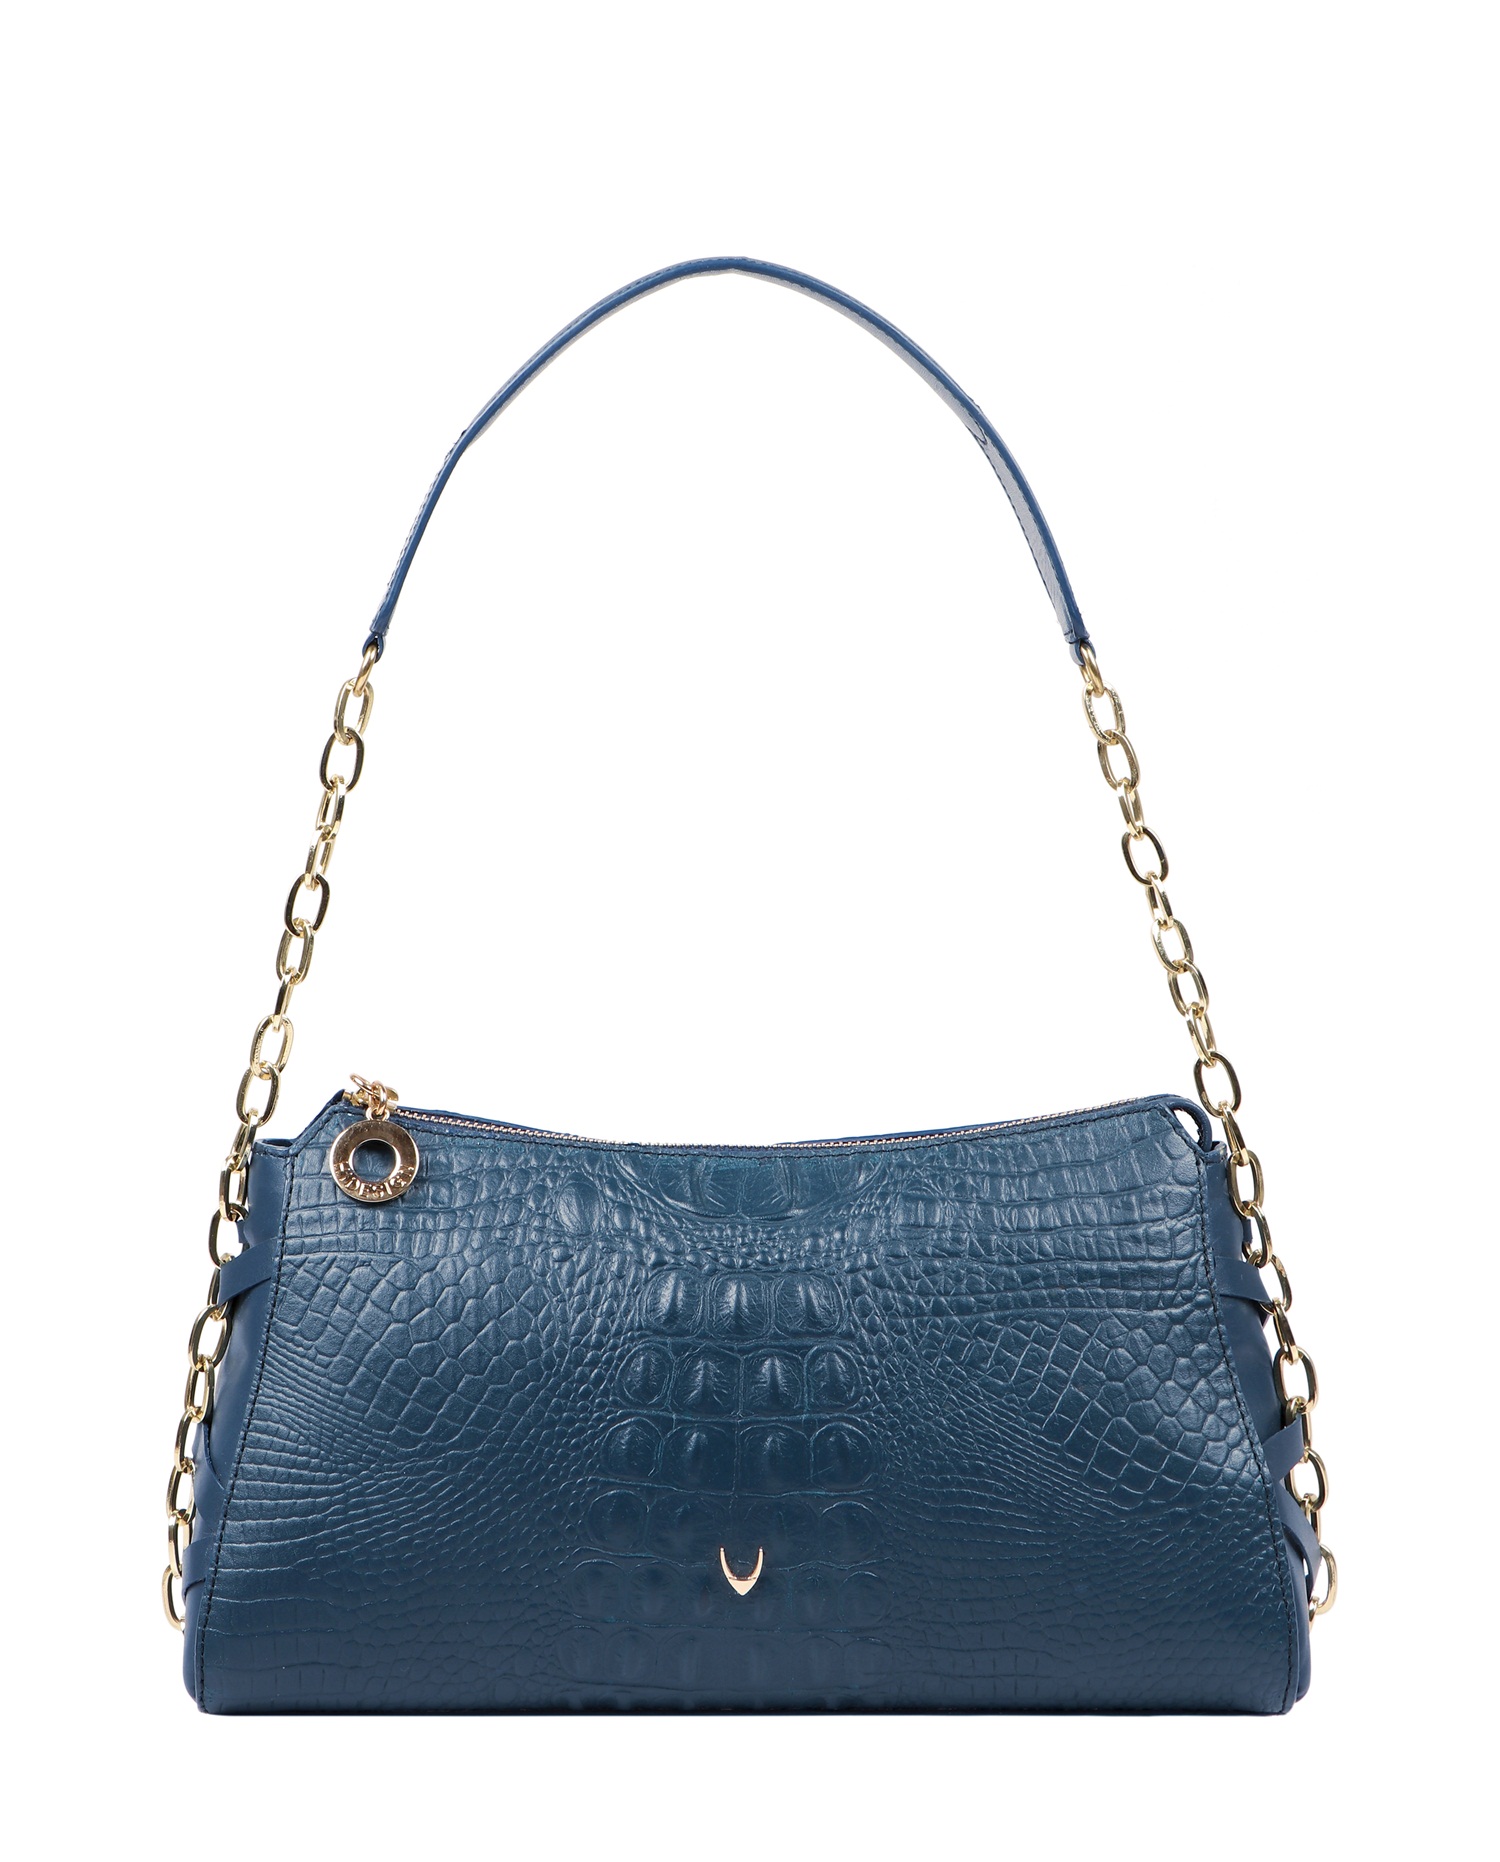 Charleston - Shoulder Bag Midnight Blue Front